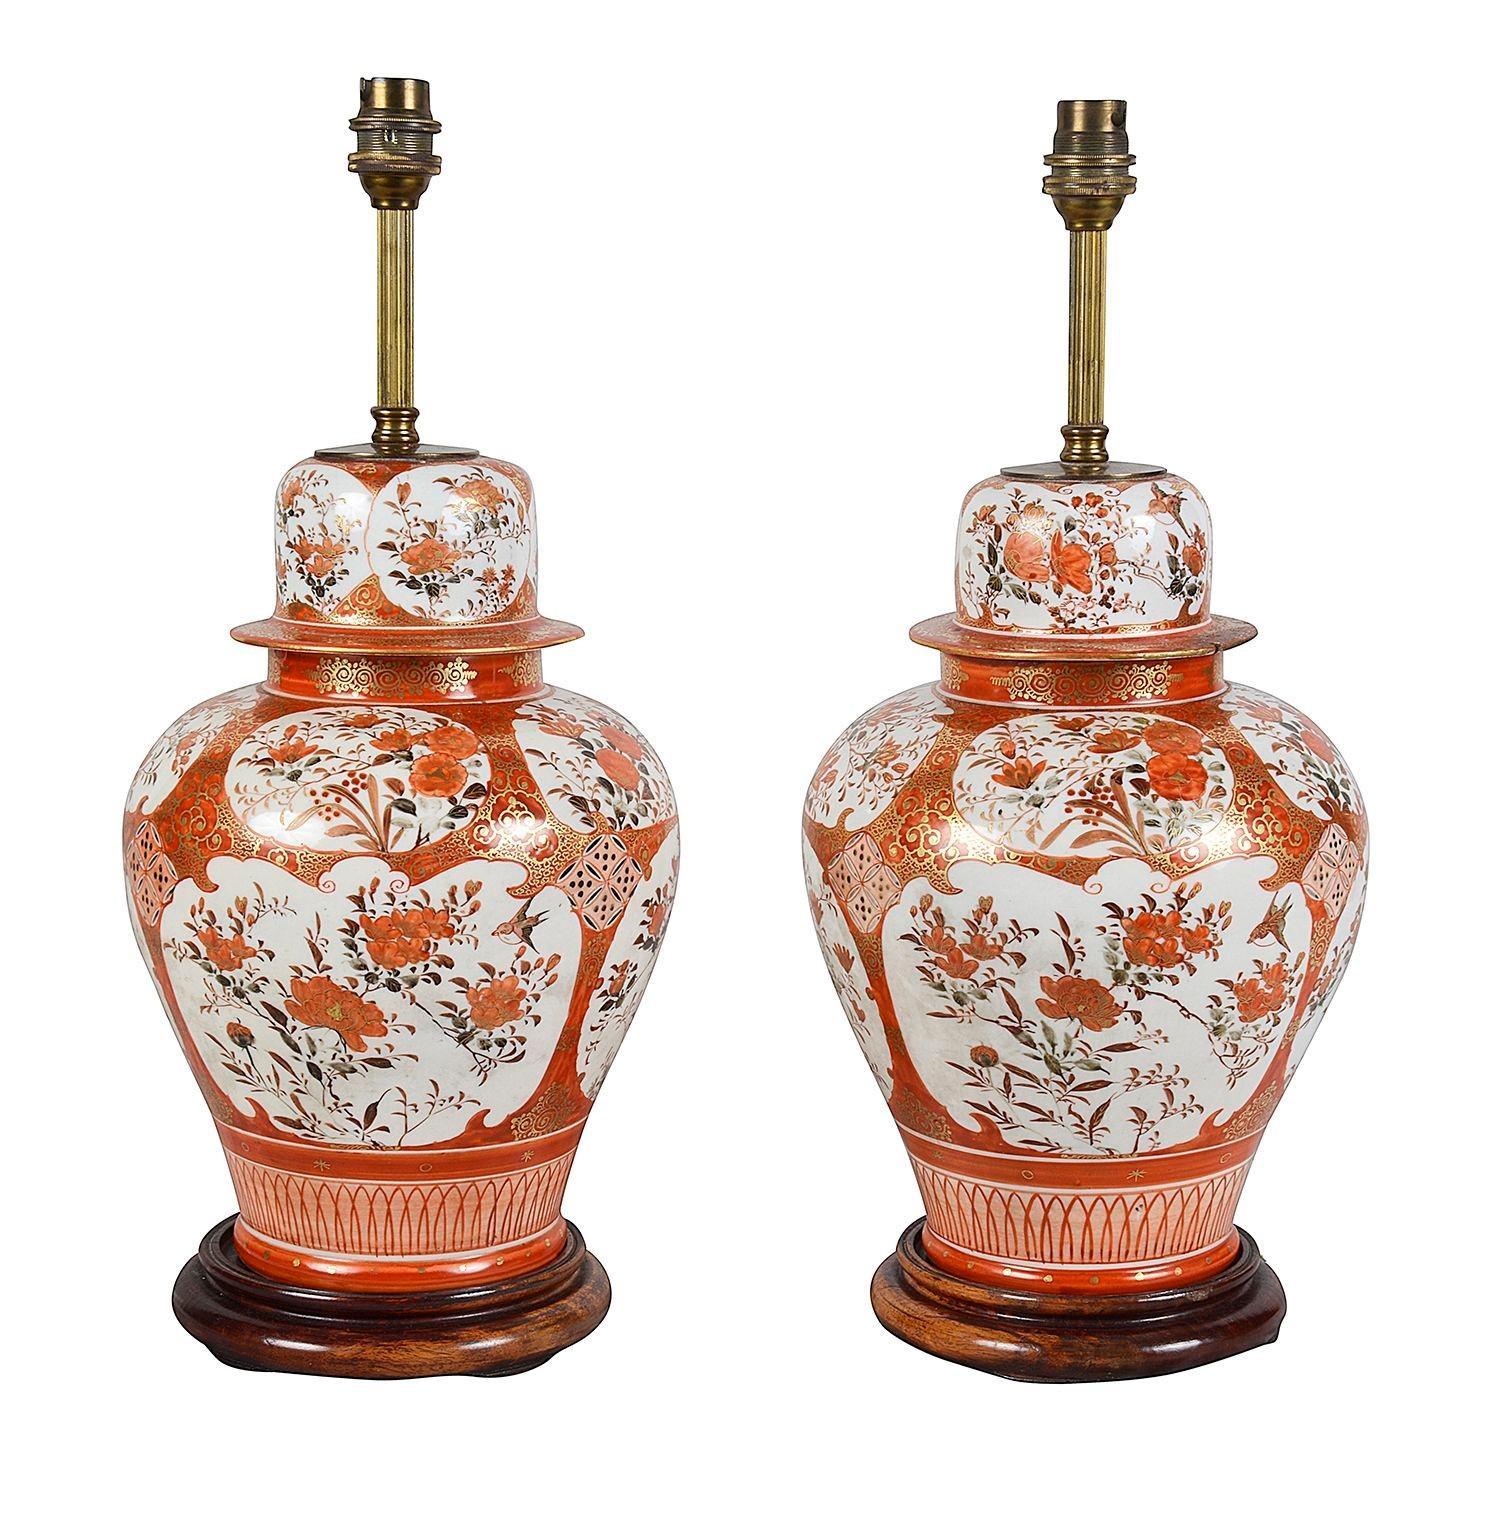 Paire de vases / lampes en porcelaine japonaise Kutani de bonne qualité datant de la fin du 19e siècle. Chacune d'entre elles présente un fond orange gras classique avec une décoration dorée en volutes. Panneaux peints à la main représentant des